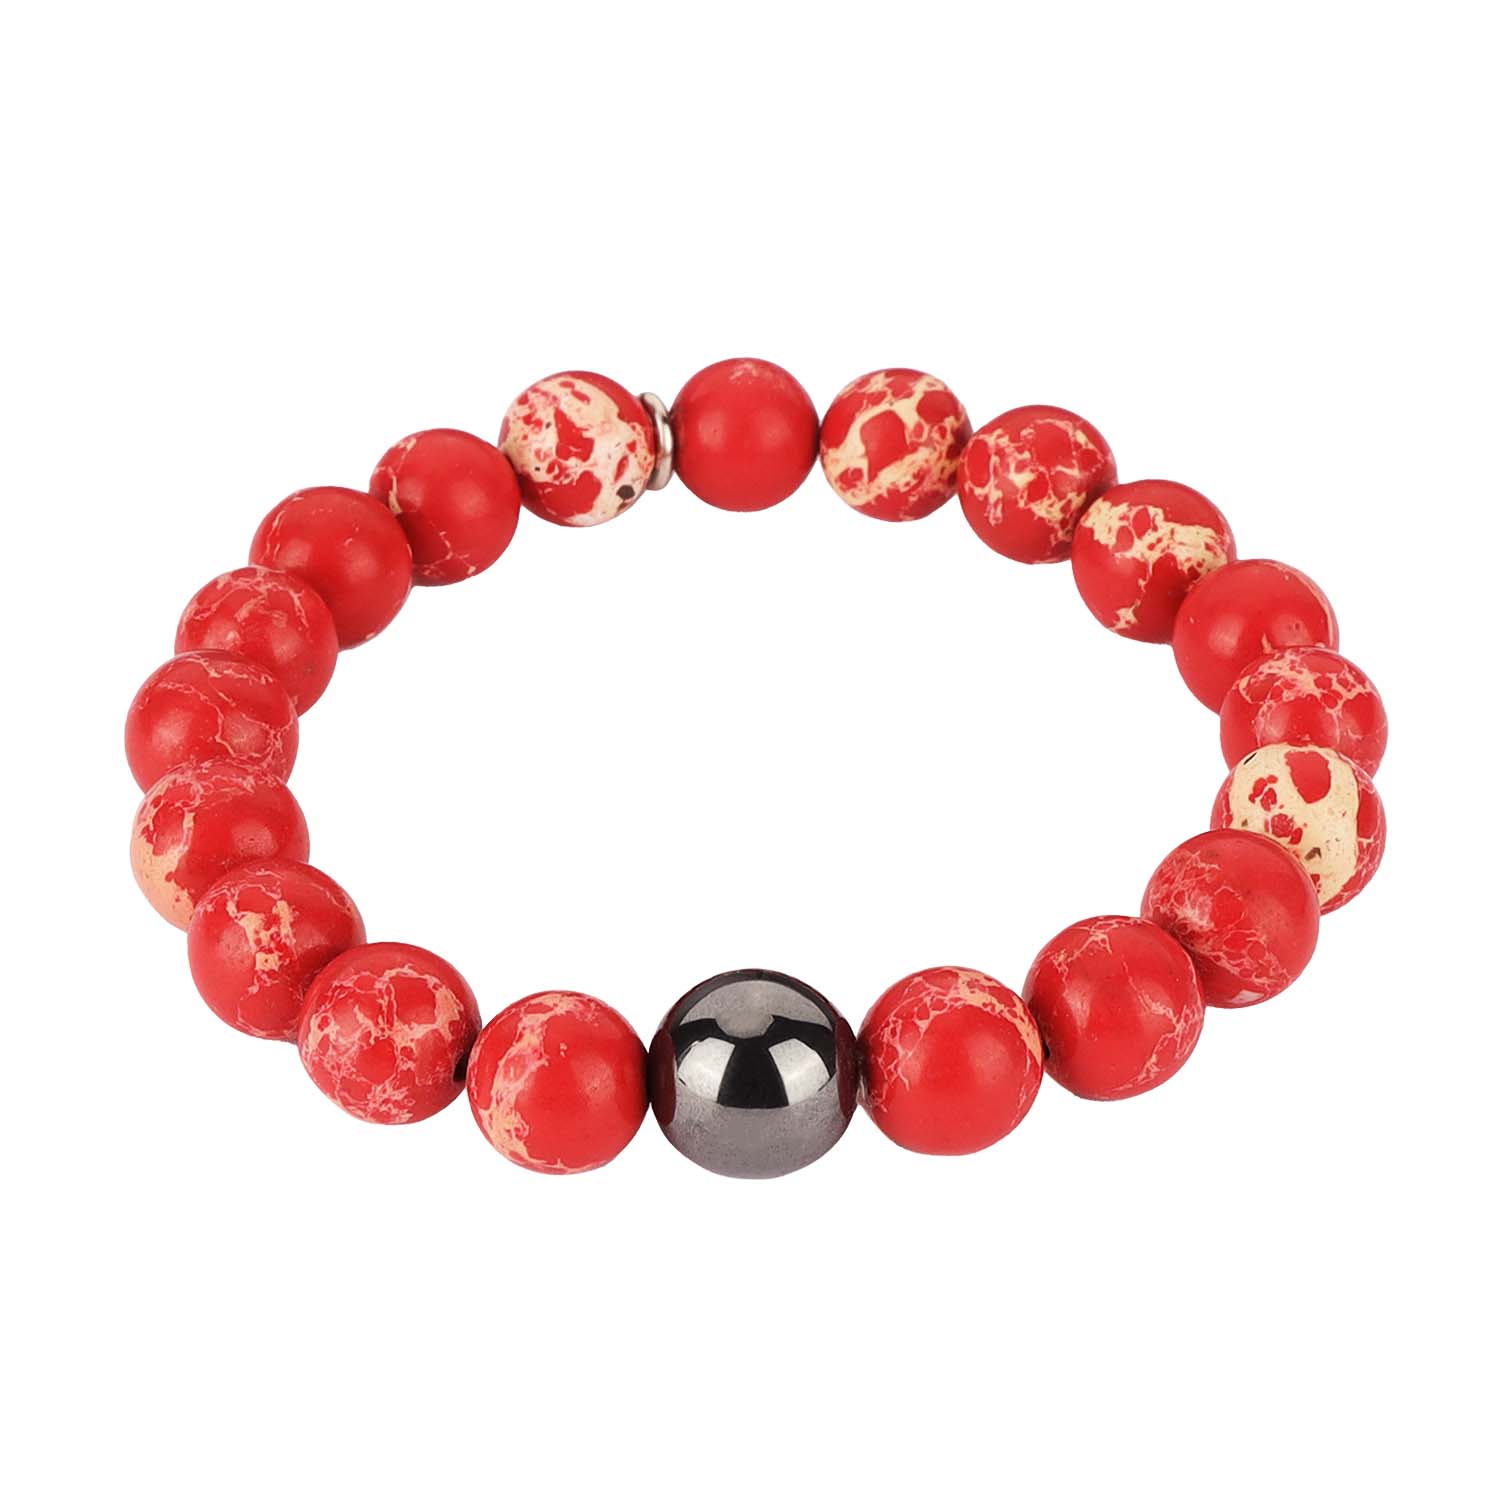 Bracelets for Men | Beaded Bracelet in Red Jasper | Mens Jewelry | BuDhaGirl